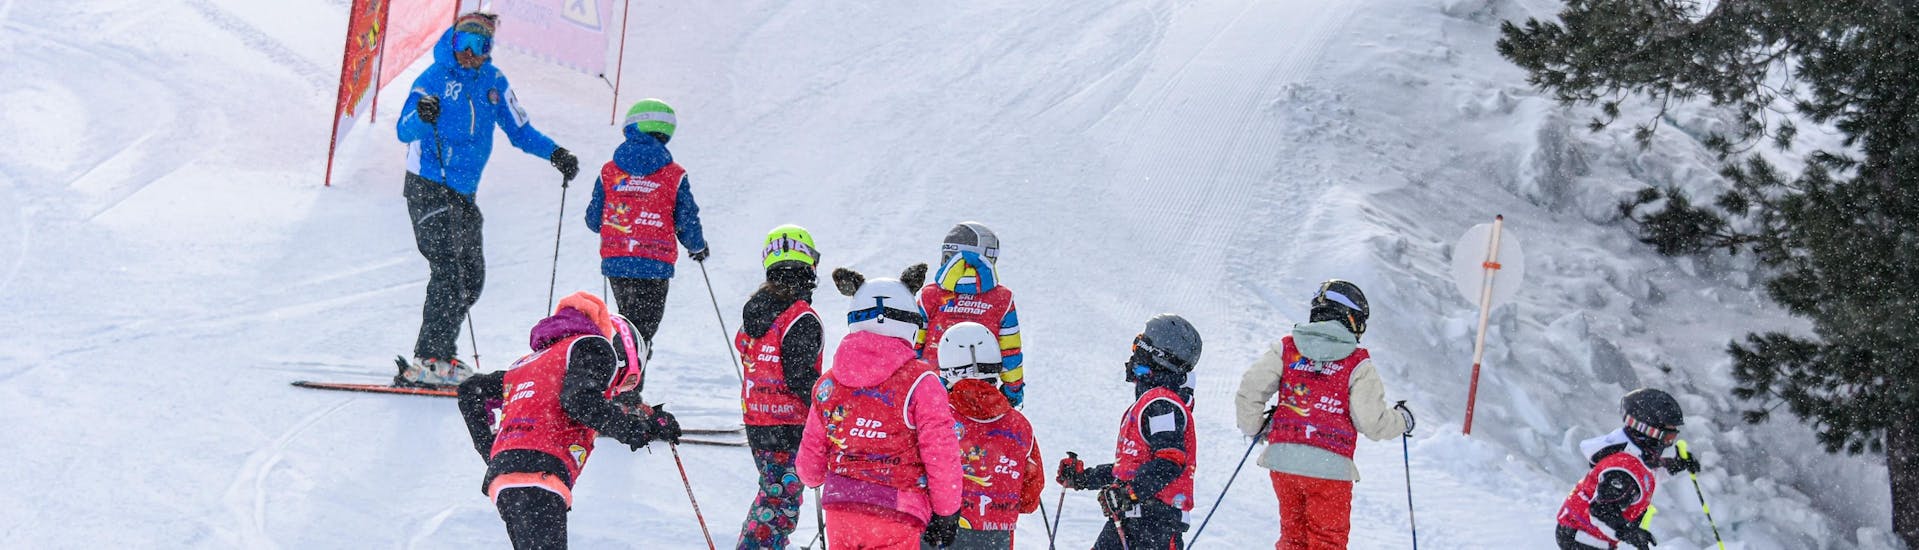 Cours de ski Enfants.